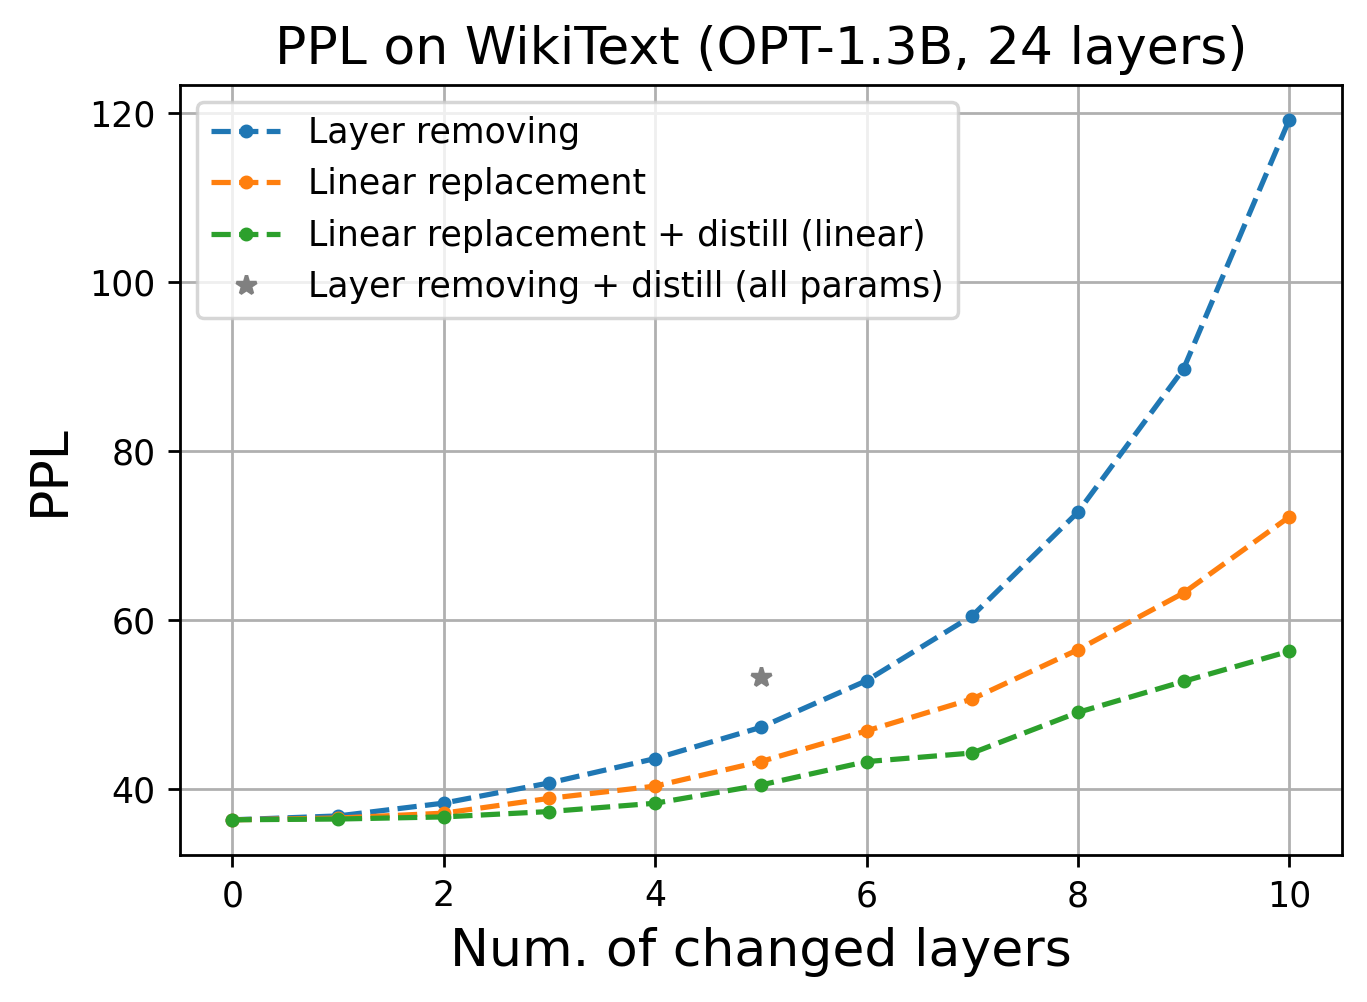 Перплексия для OPT-1.3B на WikiText при выкидывании части слоёв из модели, при линейной замене слоёв и при последующем дообучении всех новых линейных слоёв одновременно.